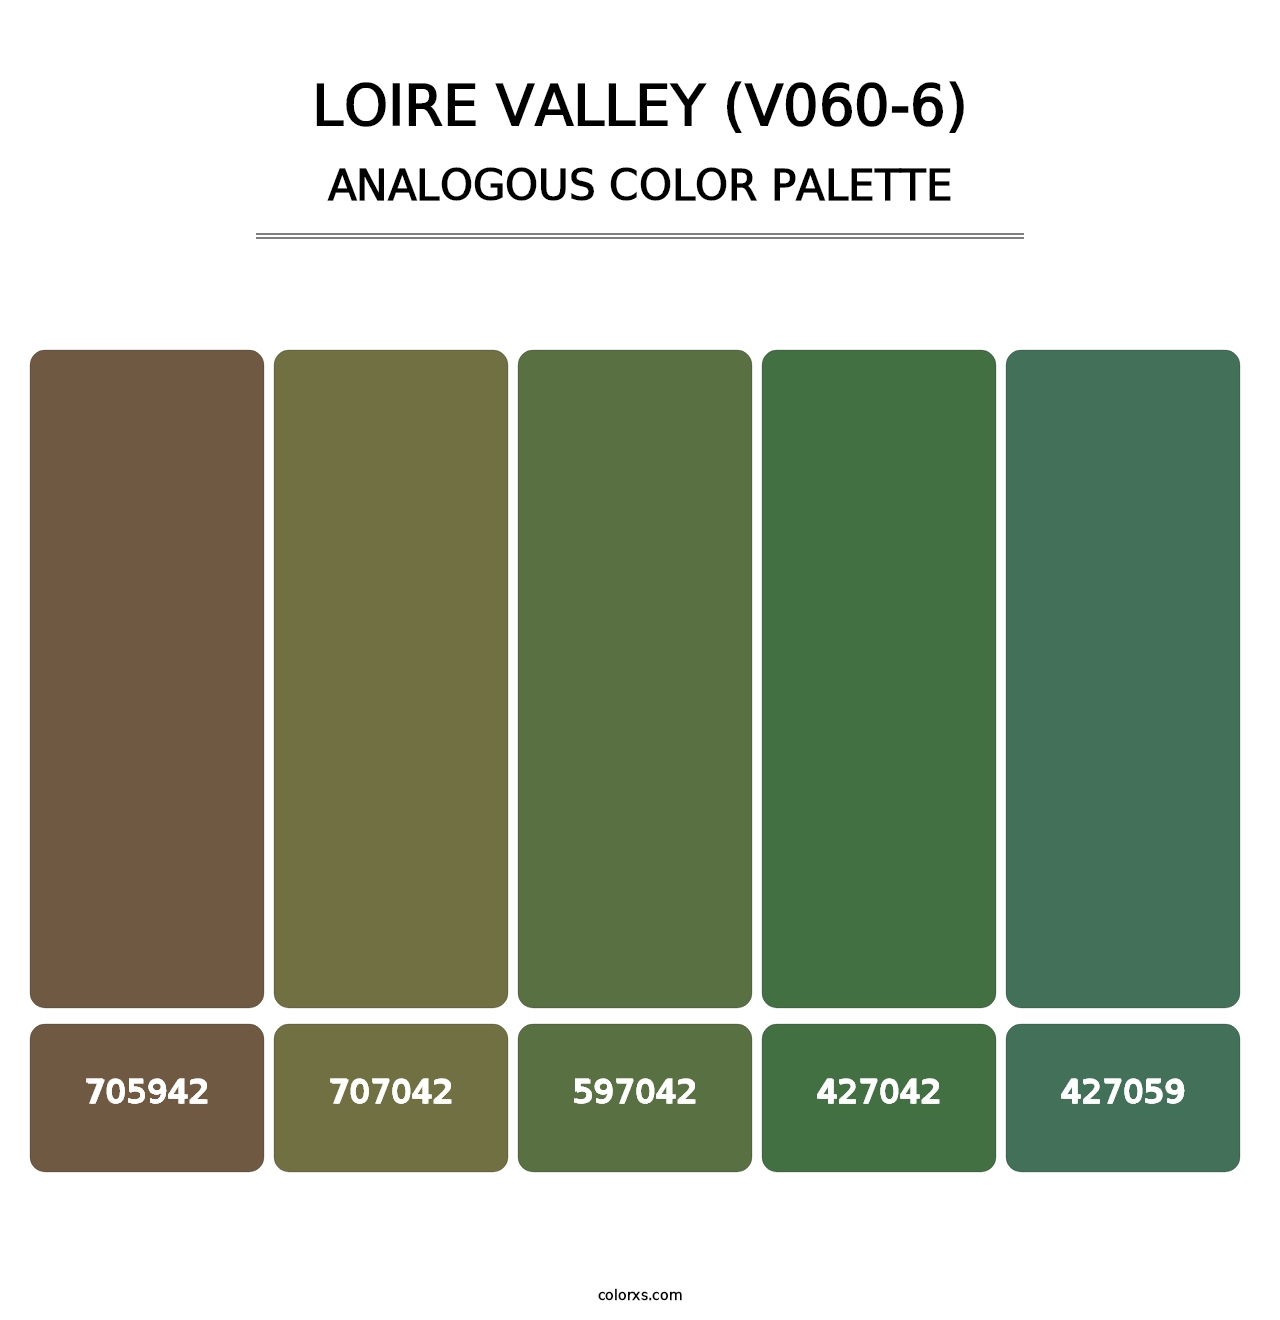 Loire Valley (V060-6) - Analogous Color Palette